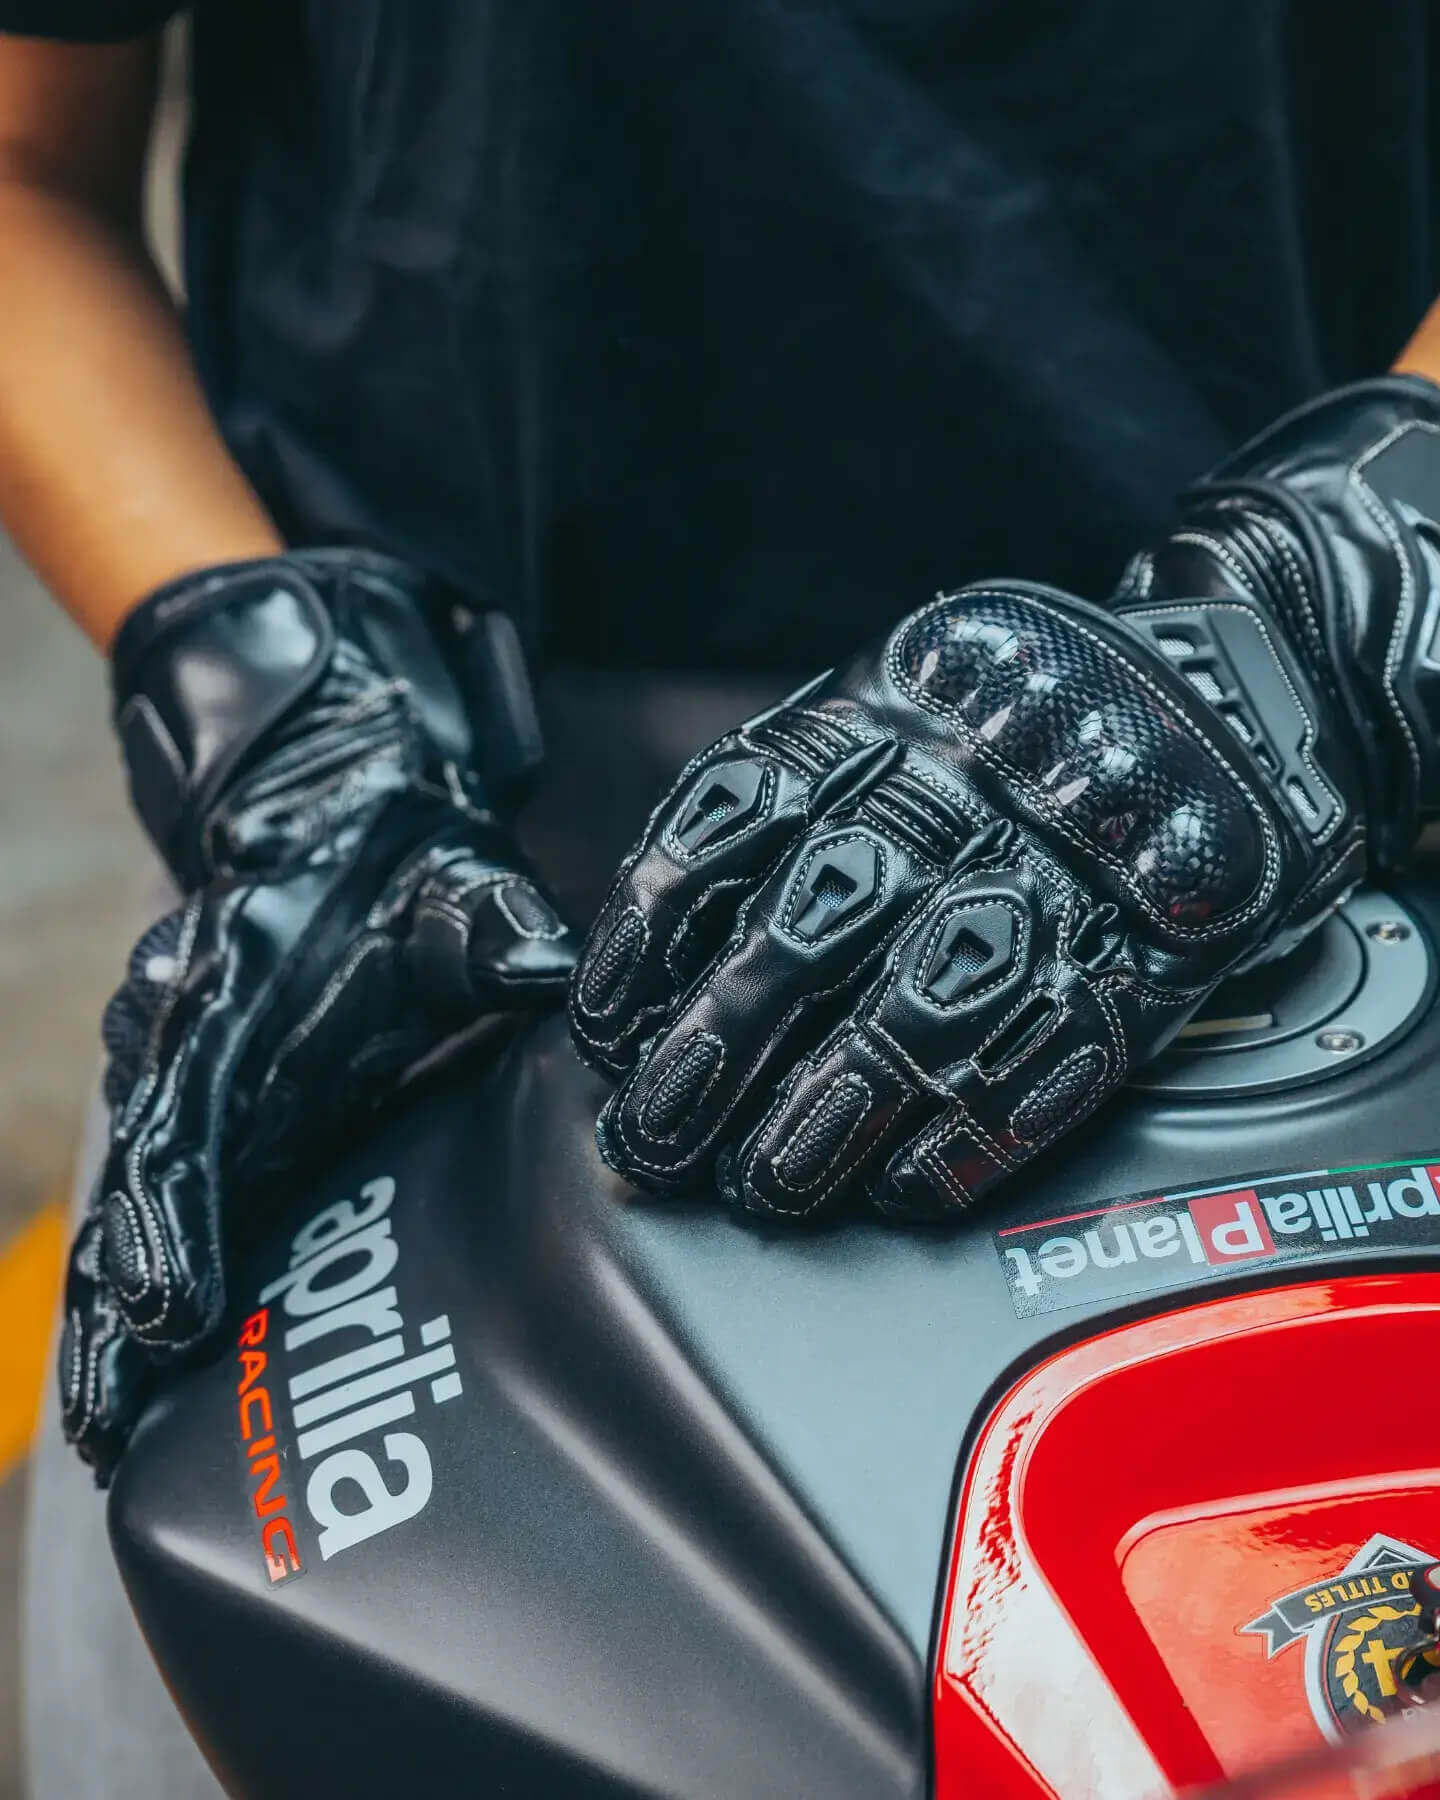 Andromeda | | Moto Andromeda gloves Moto racing Motorcycle